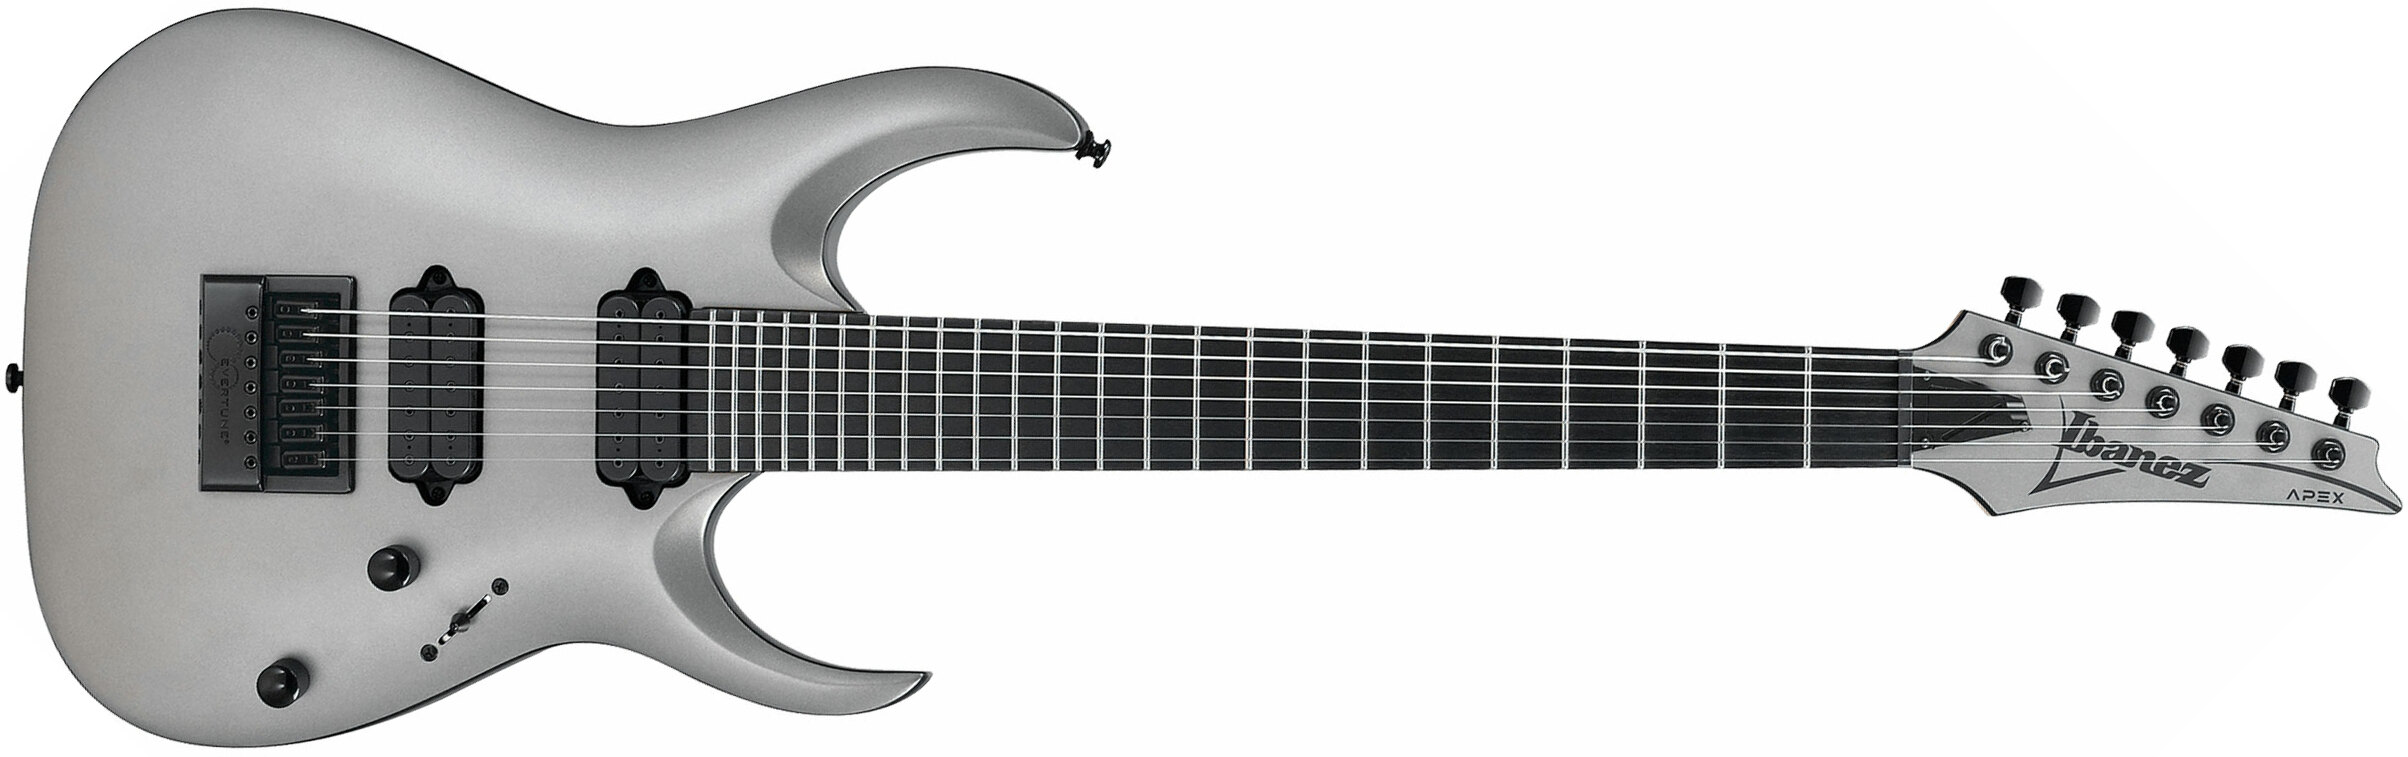 Ibanez Munky Apex30 Signature 7c Hh Dimarzio Ht Eb - Metallic Gray Matte - 7-saitige E-Gitarre - Main picture